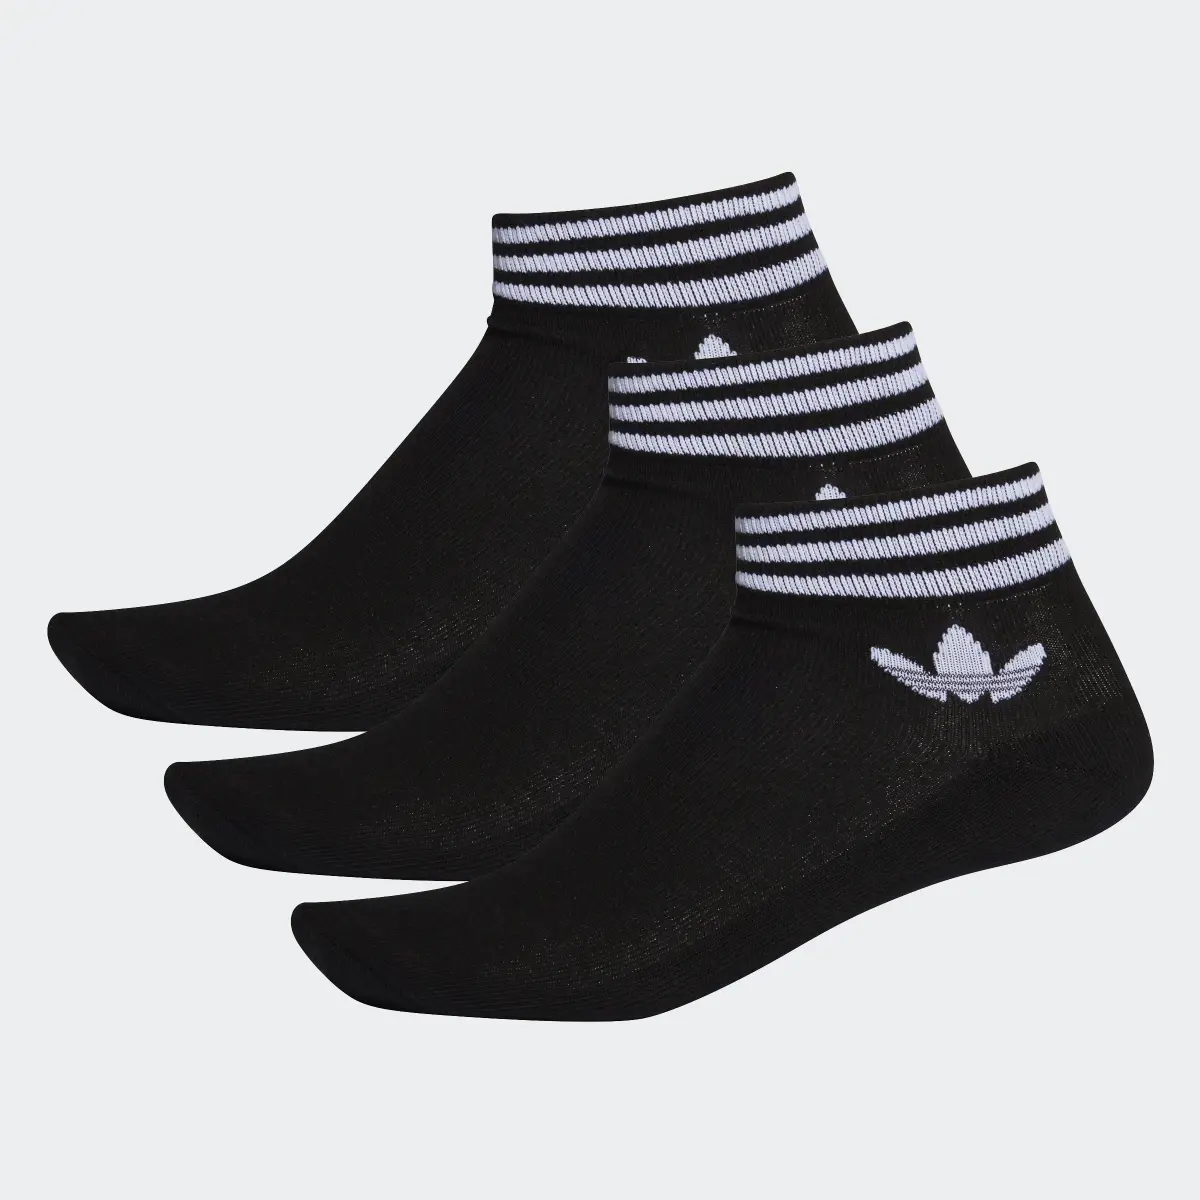 Adidas Island Club Trefoil Ankle Socks 3 Pairs. 2